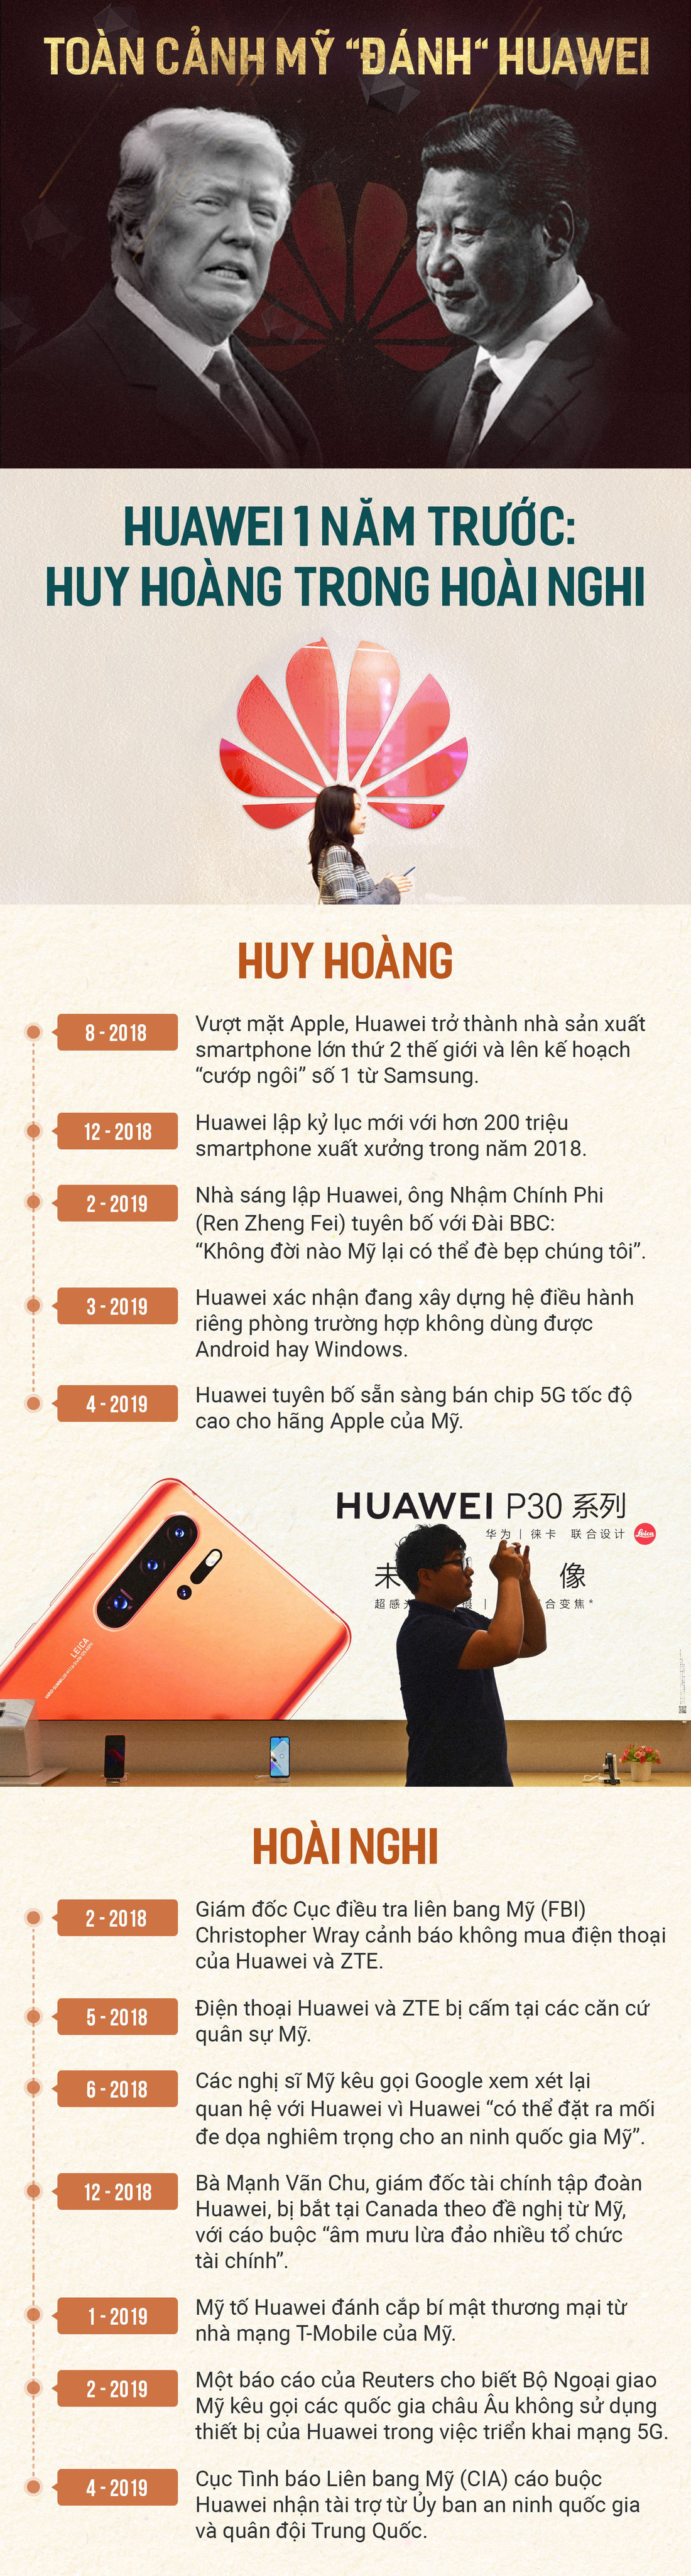 Toàn cảnh Mỹ đánh Huawei - Ảnh 1.